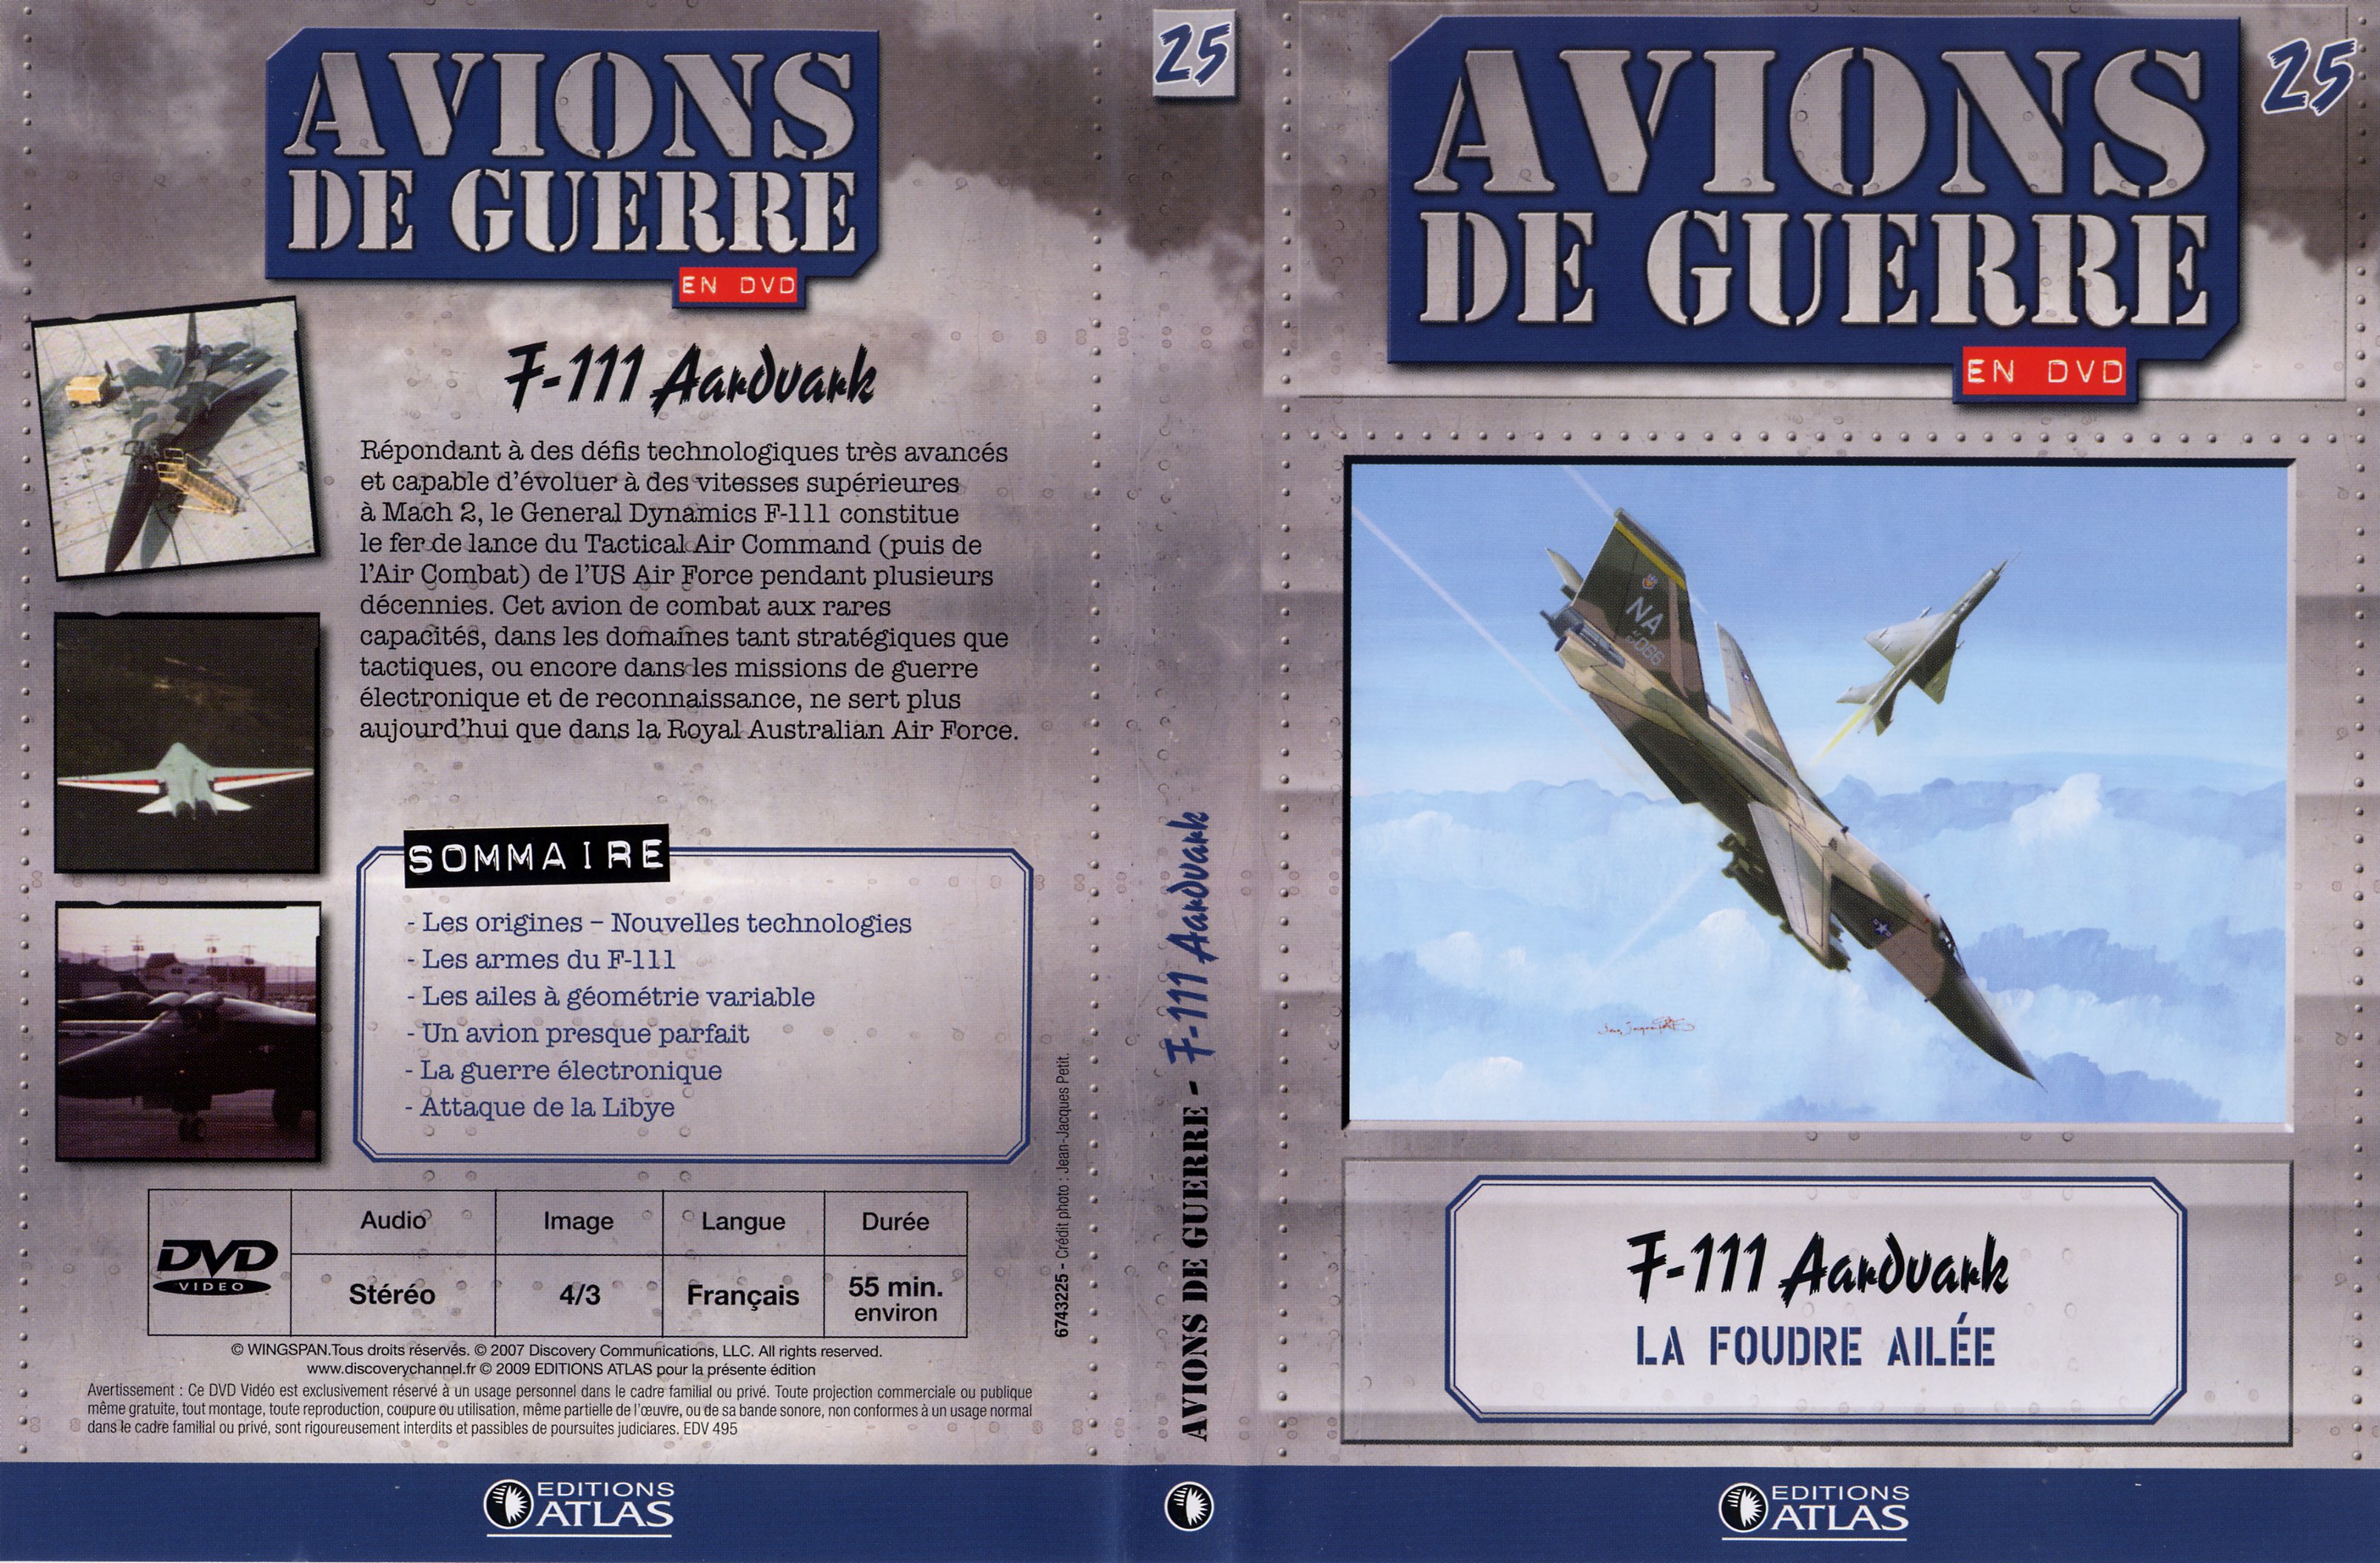 Jaquette DVD Avions de guerre en DVD vol 25